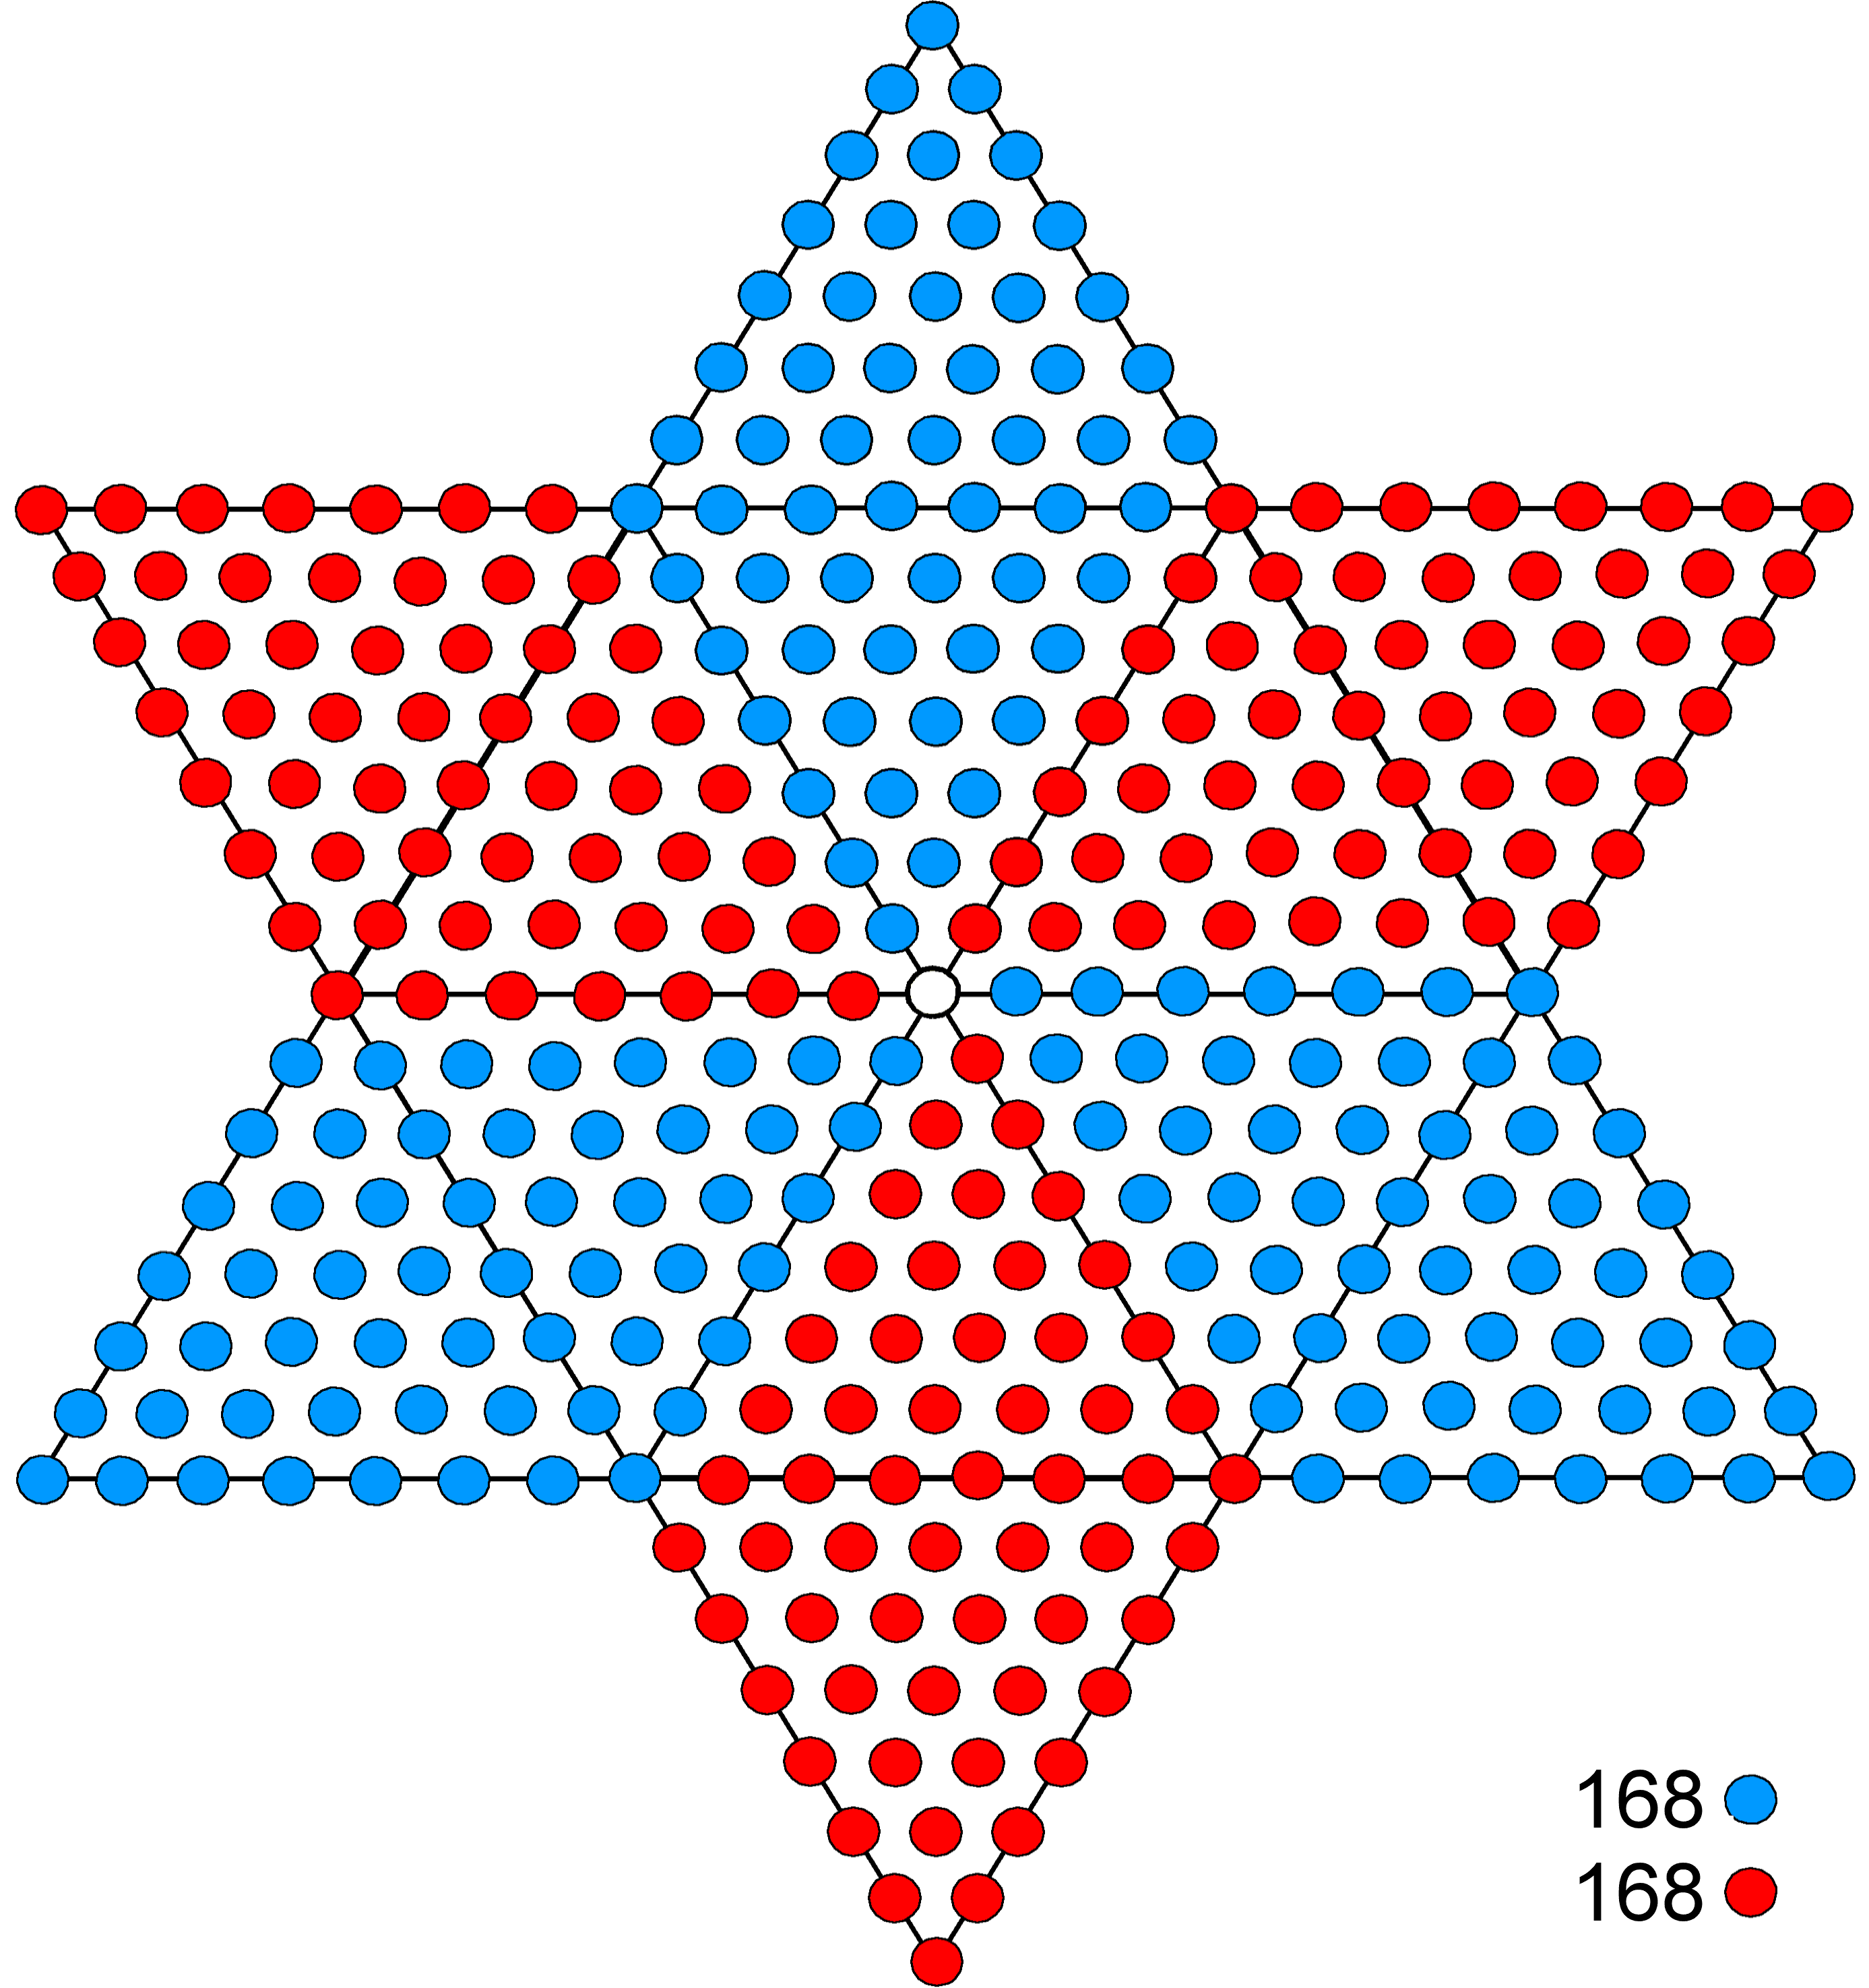 336 dots in hexagram